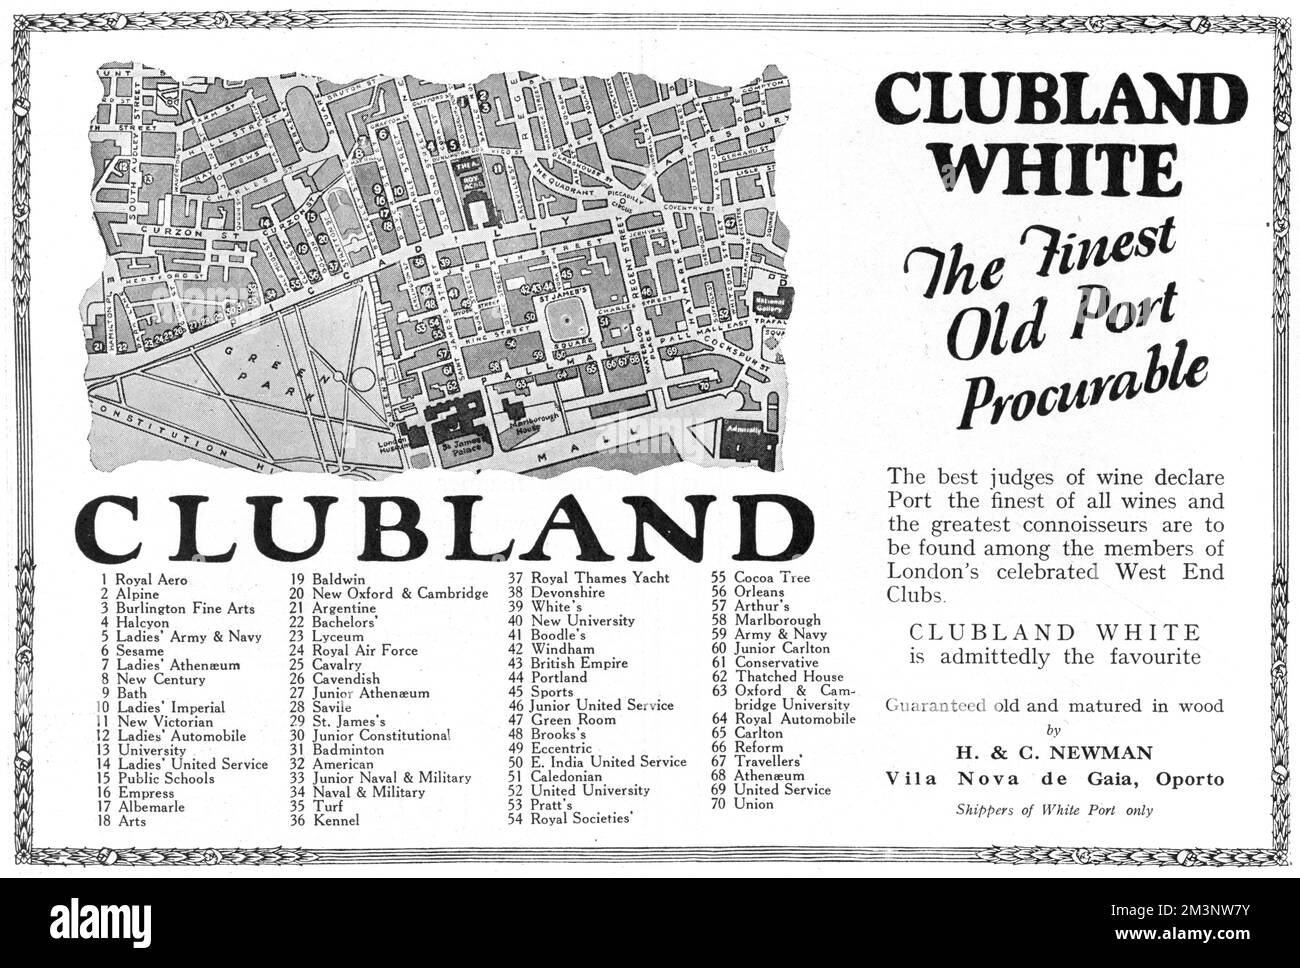 Werbung für Clubland White, den „besten alten Hafen zu finden... unter den Mitgliedern von Londons gefeierten West End Clubs“. Der Werbespot enthält eine interessante Karte und einen Schlüssel zu 70 der Clubs im Zentrum von London, von denen viele noch heute existieren. Datum: 1927 Stockfoto